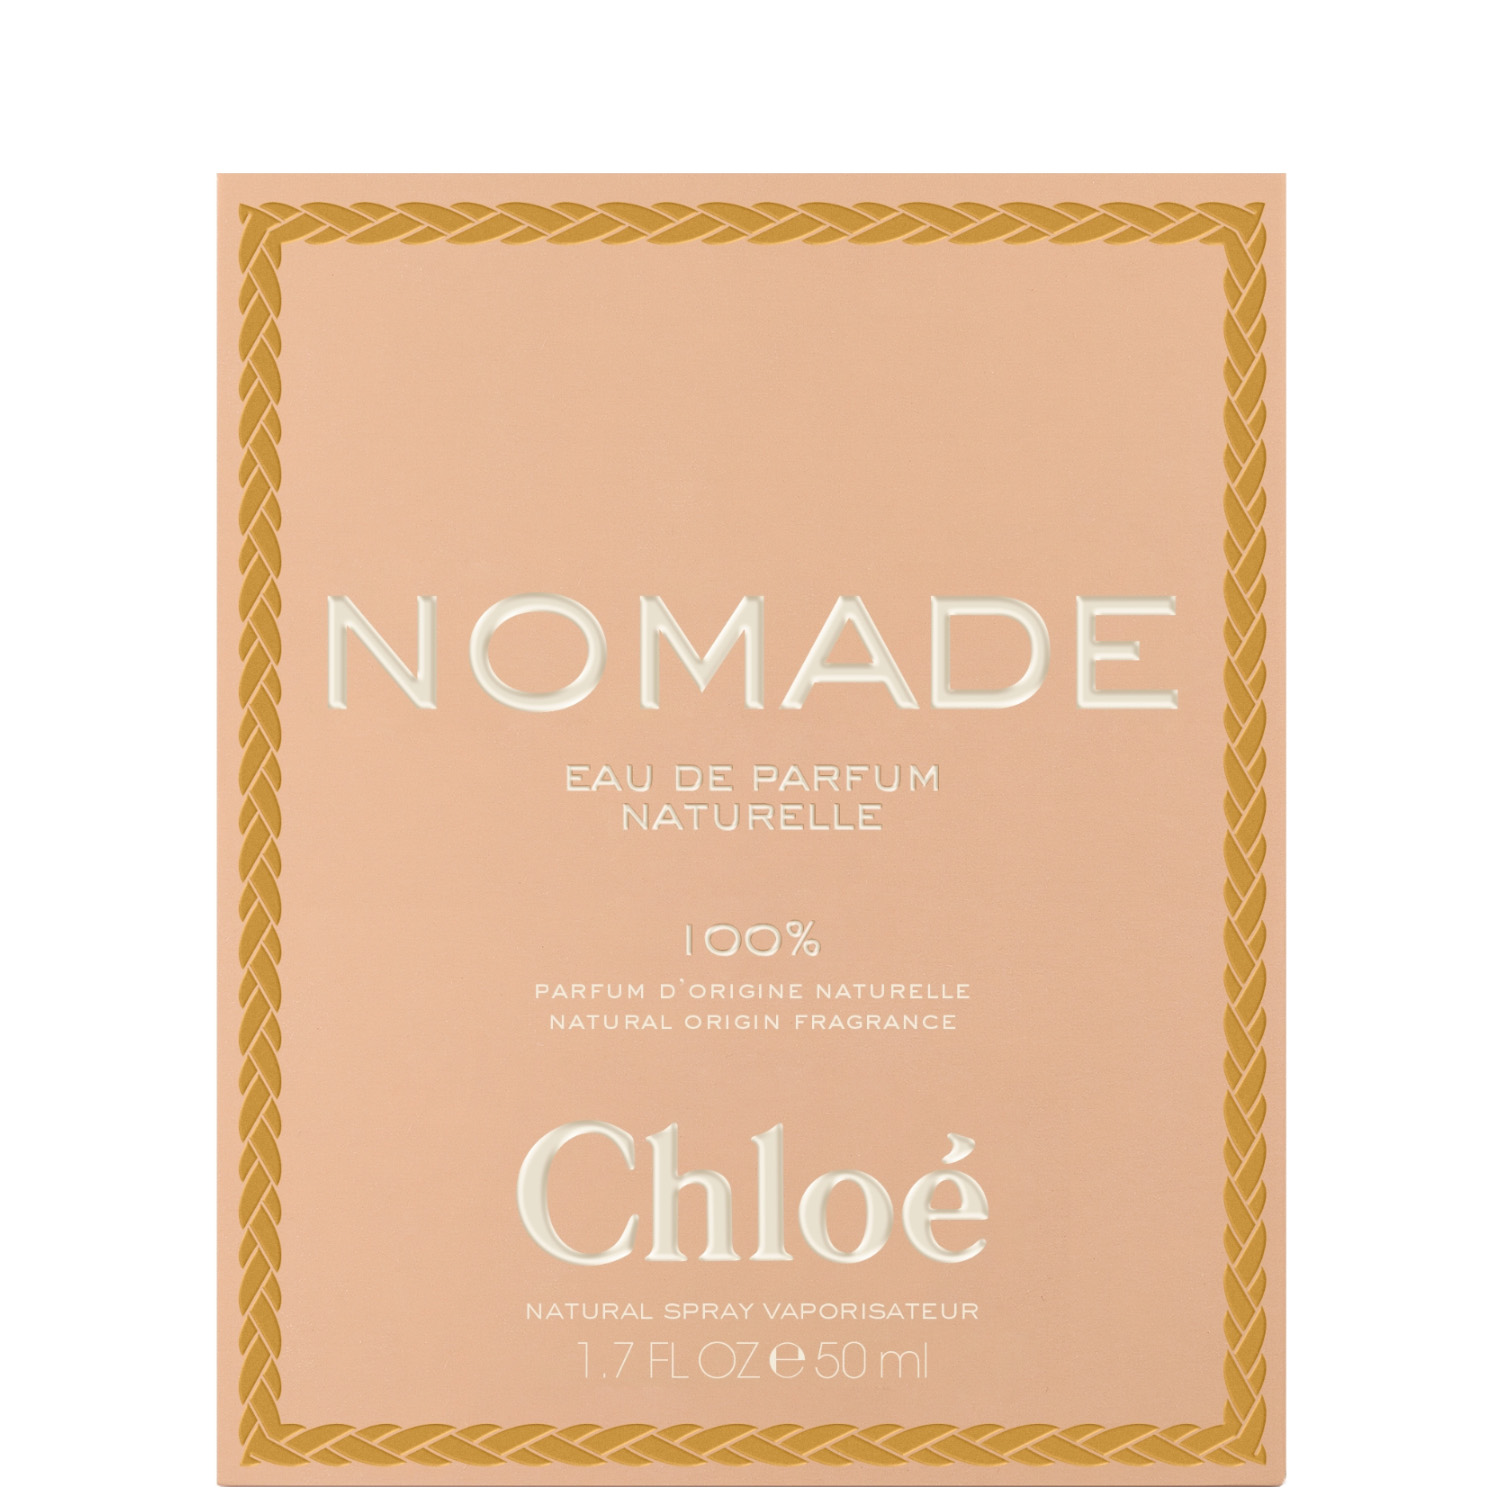 Chloé Nomade Naturelle Eau de Parfum 50ml 